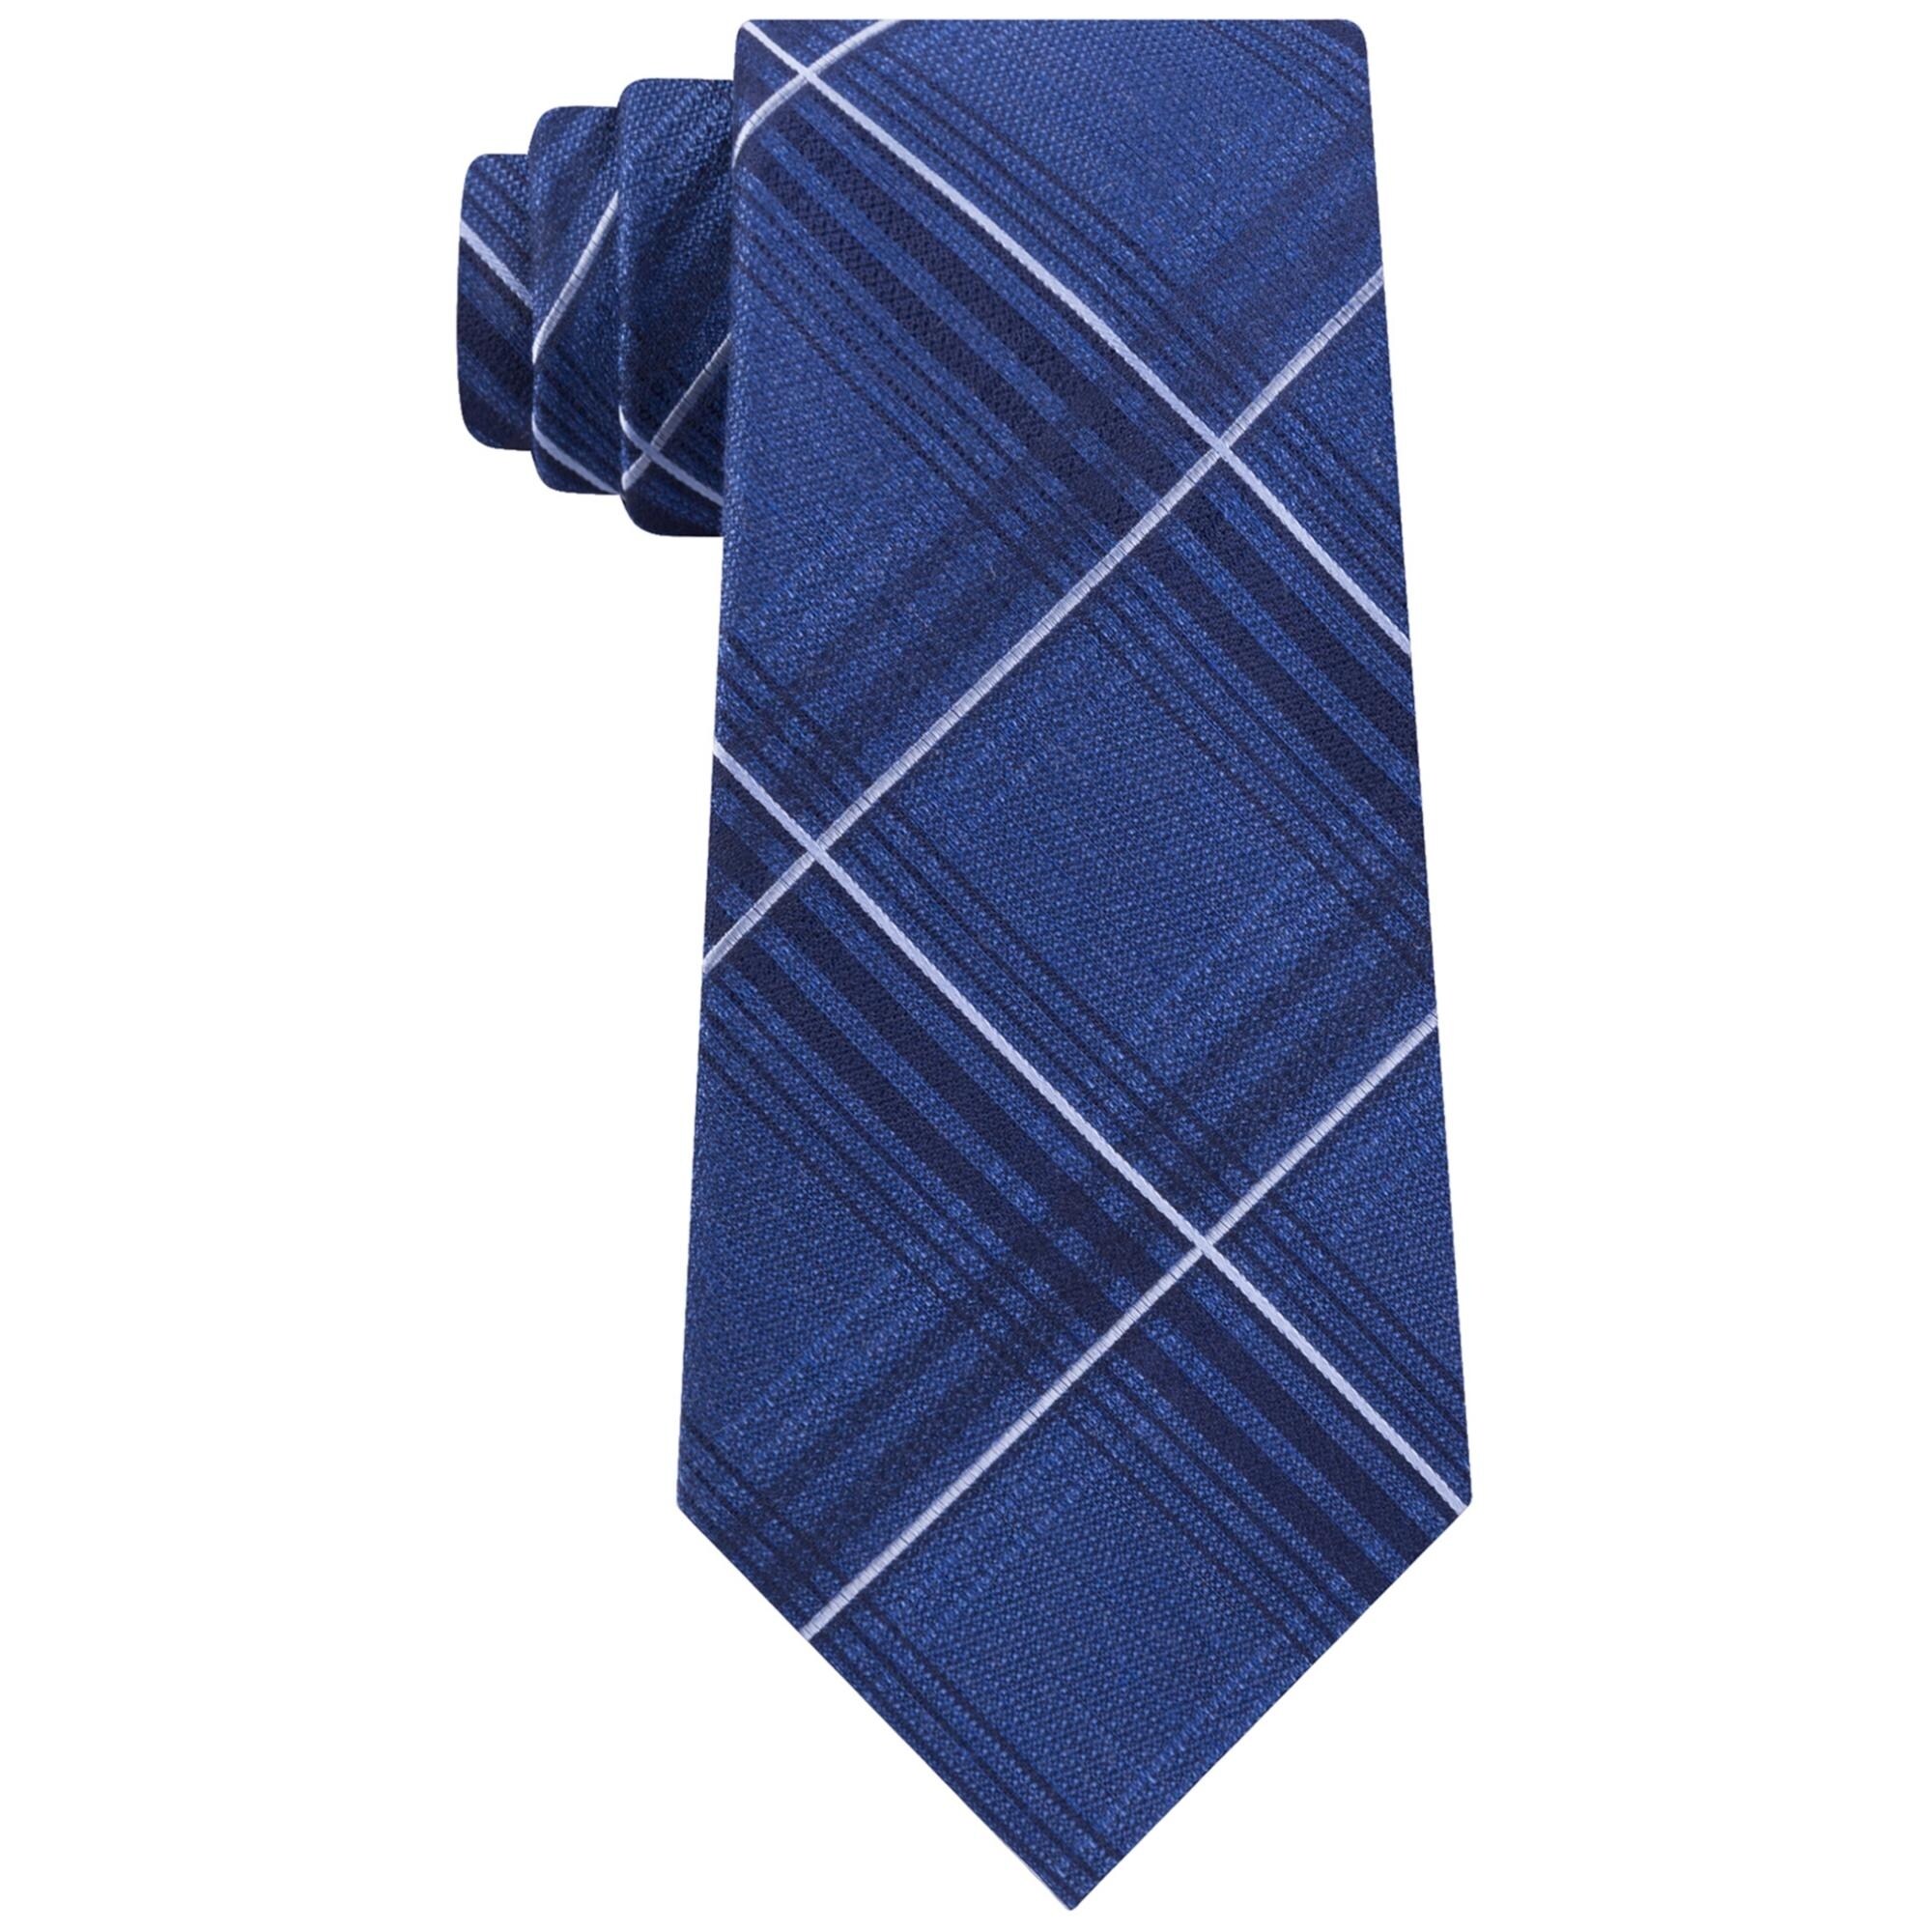 michael kors shirt and tie set